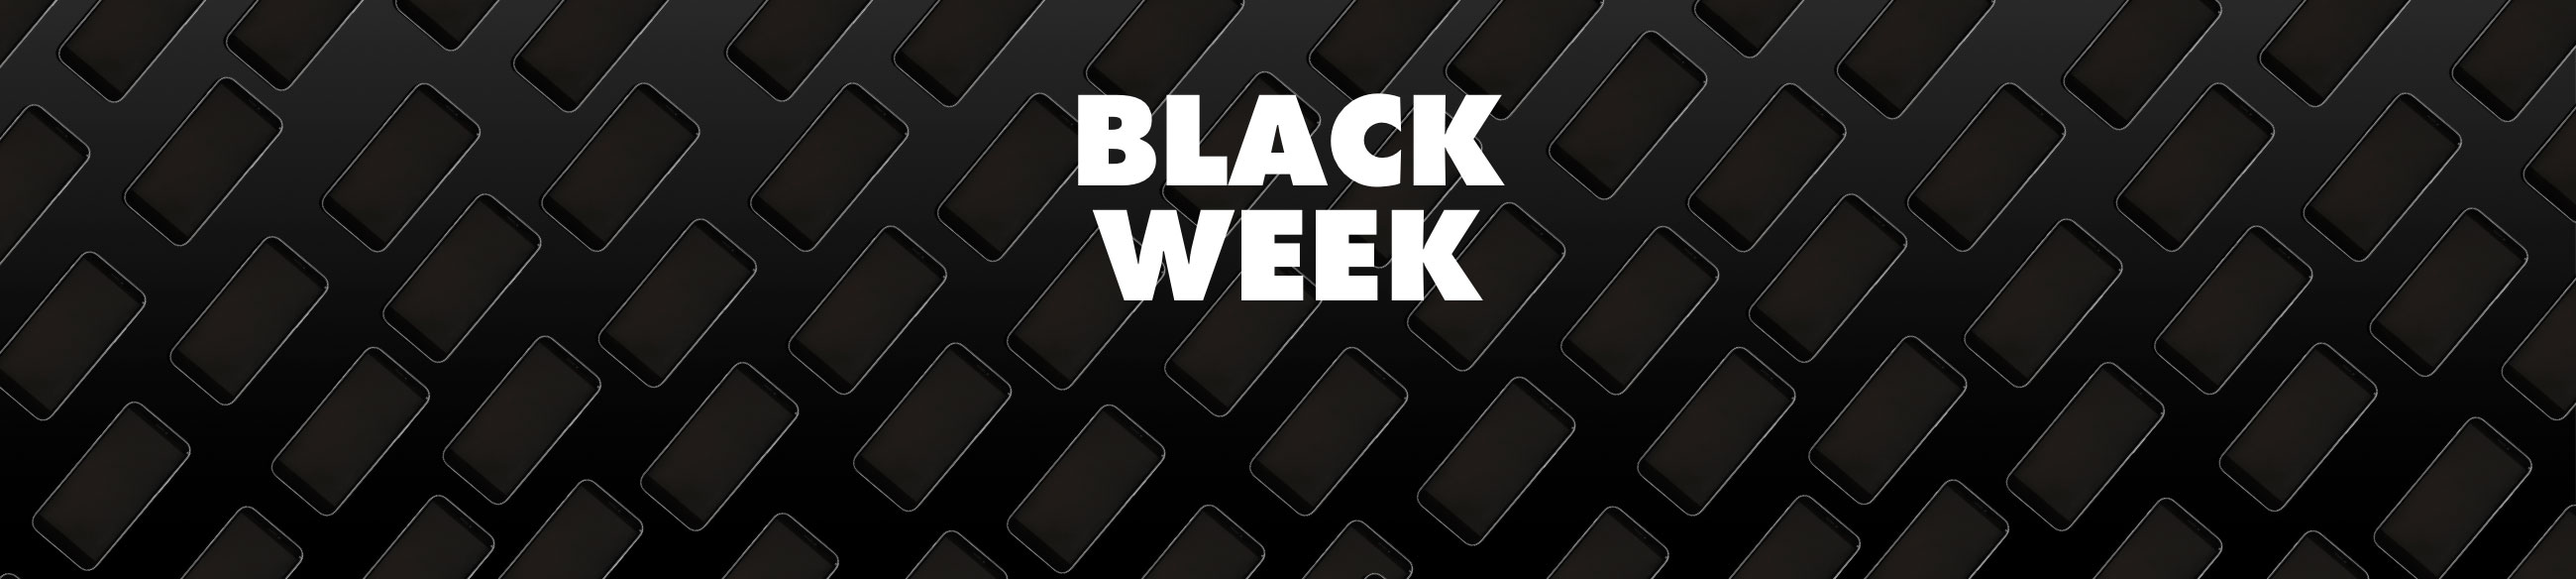 Black Week hos Telmore